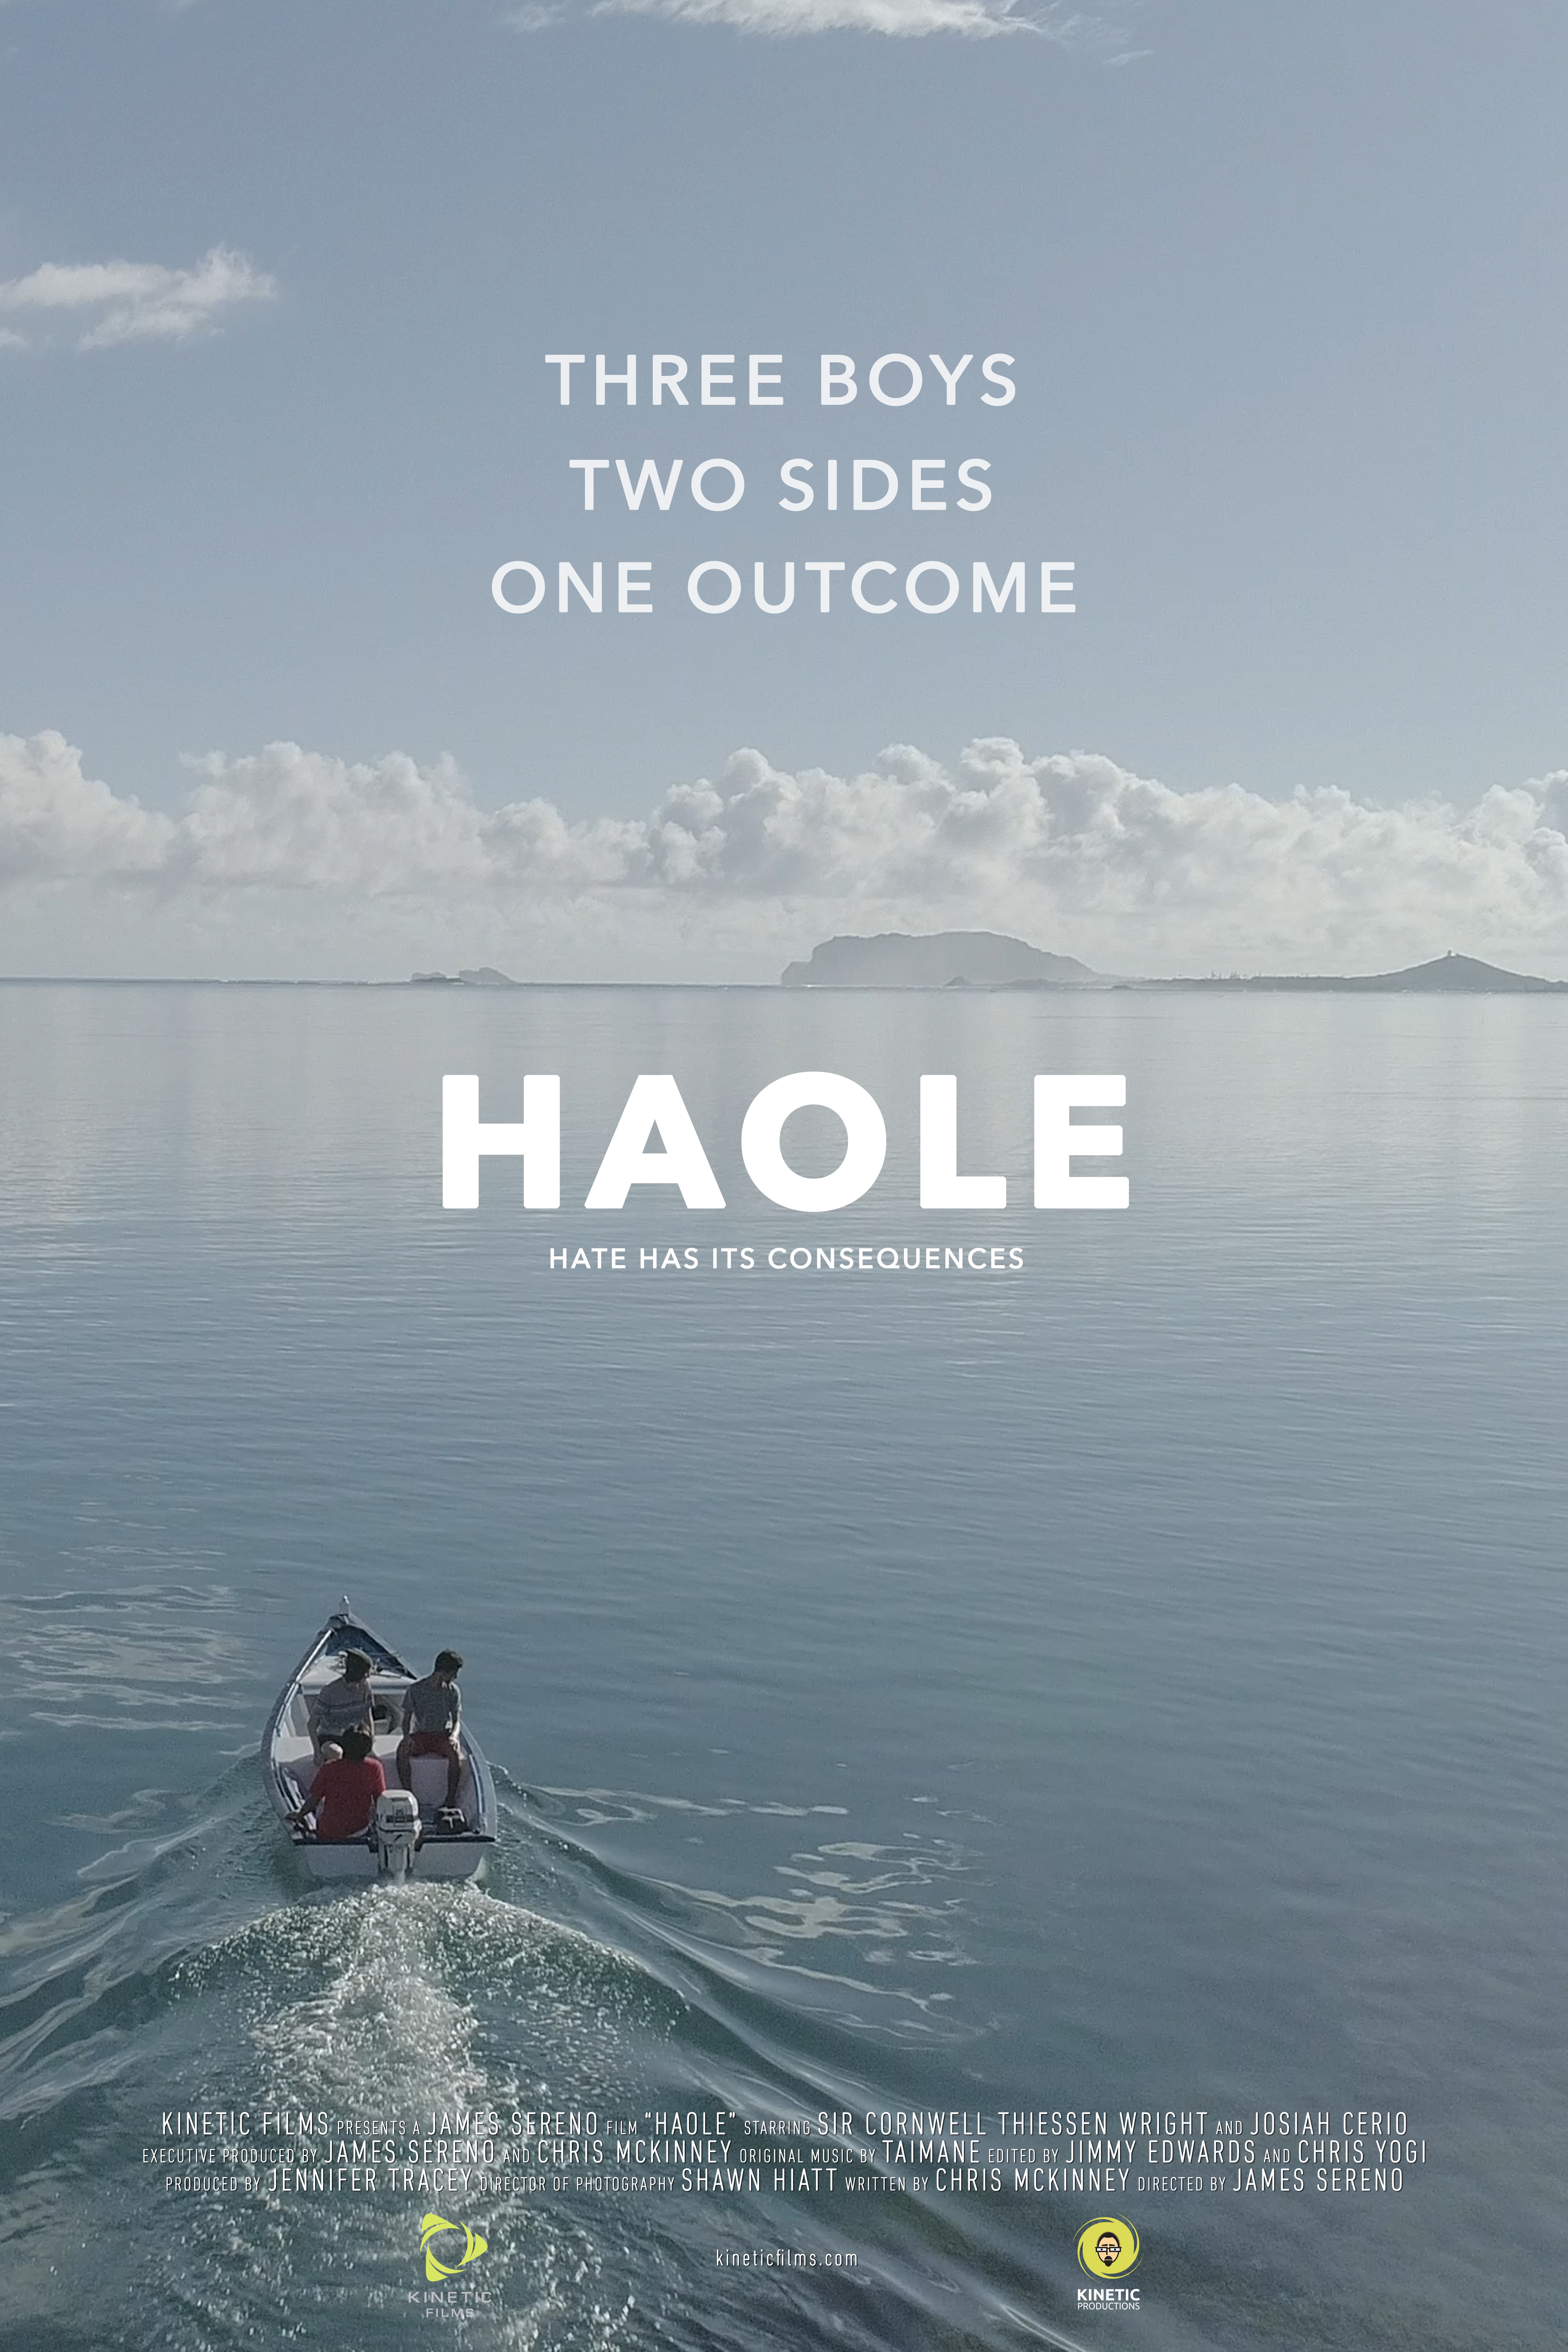 Nonton film Haole layarkaca21 indoxx1 ganool online streaming terbaru